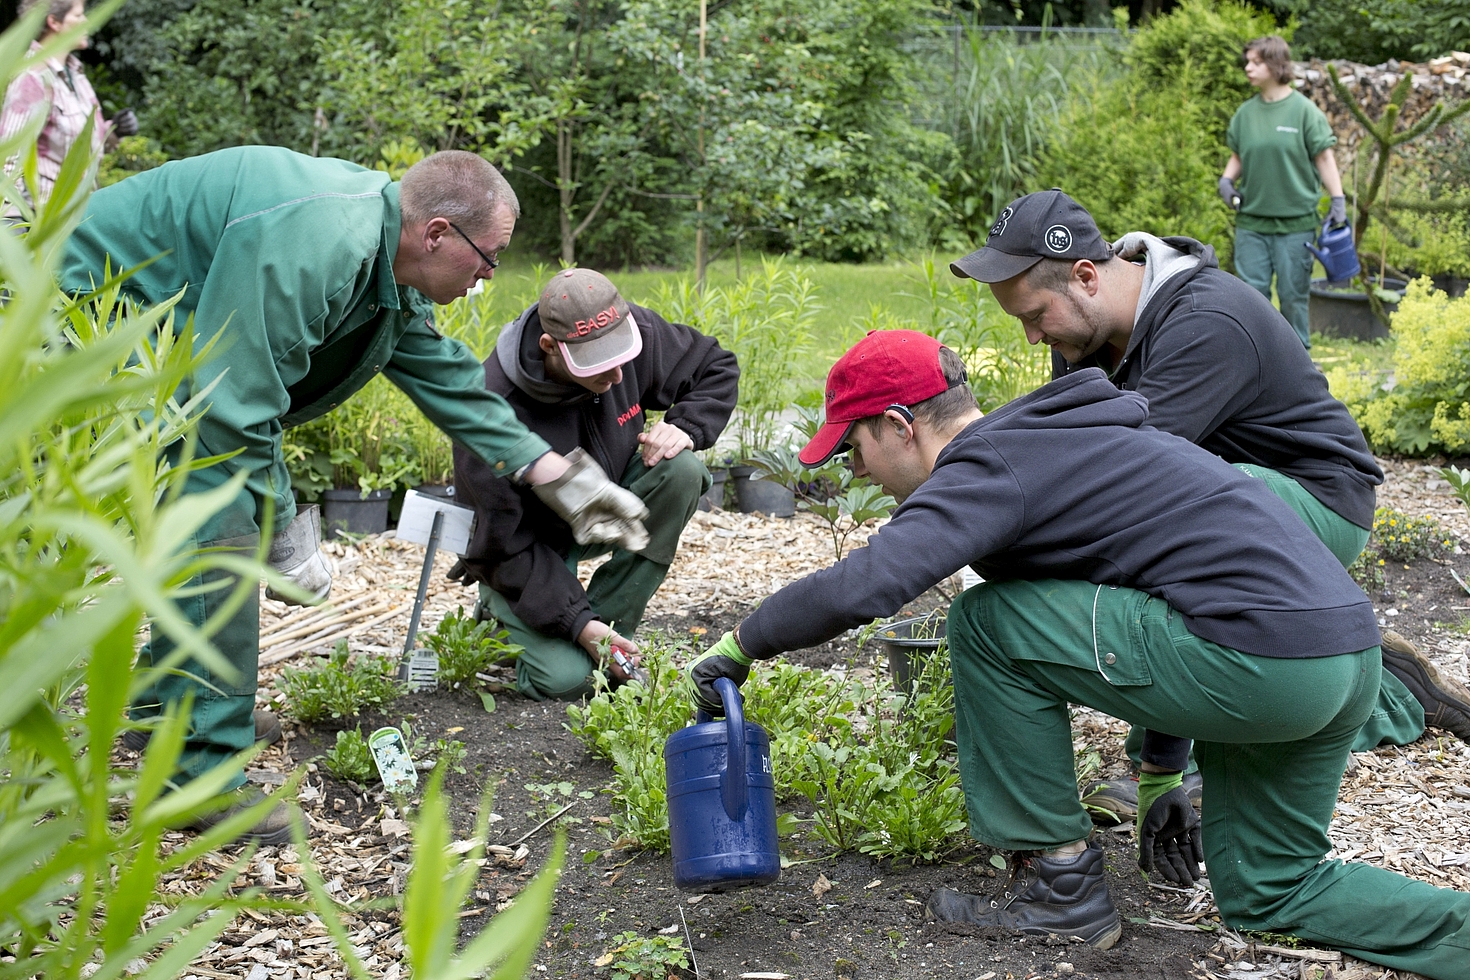 Foto: 4 Männer im Vordergrund bei der Gartenarbeit, 2 Frauen im Hintergrund